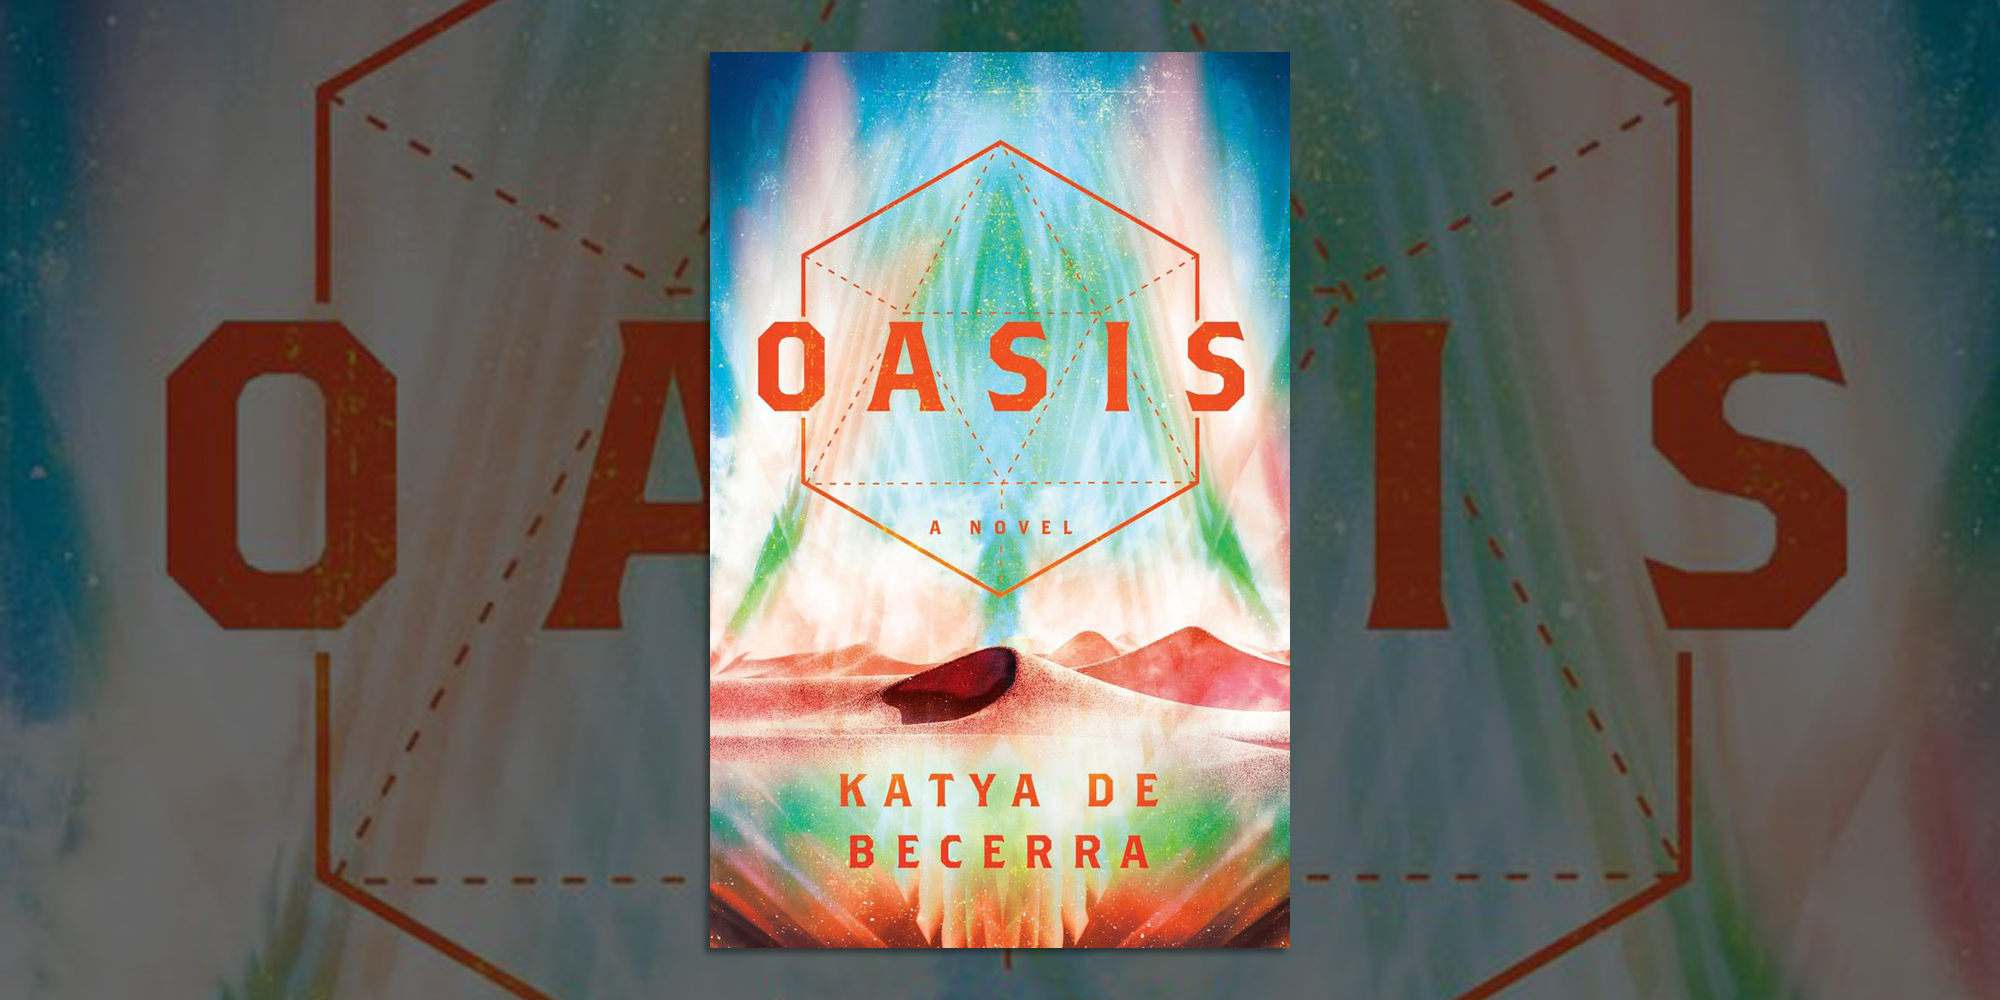 What Inspired Katya de Becerra to Write Oasis